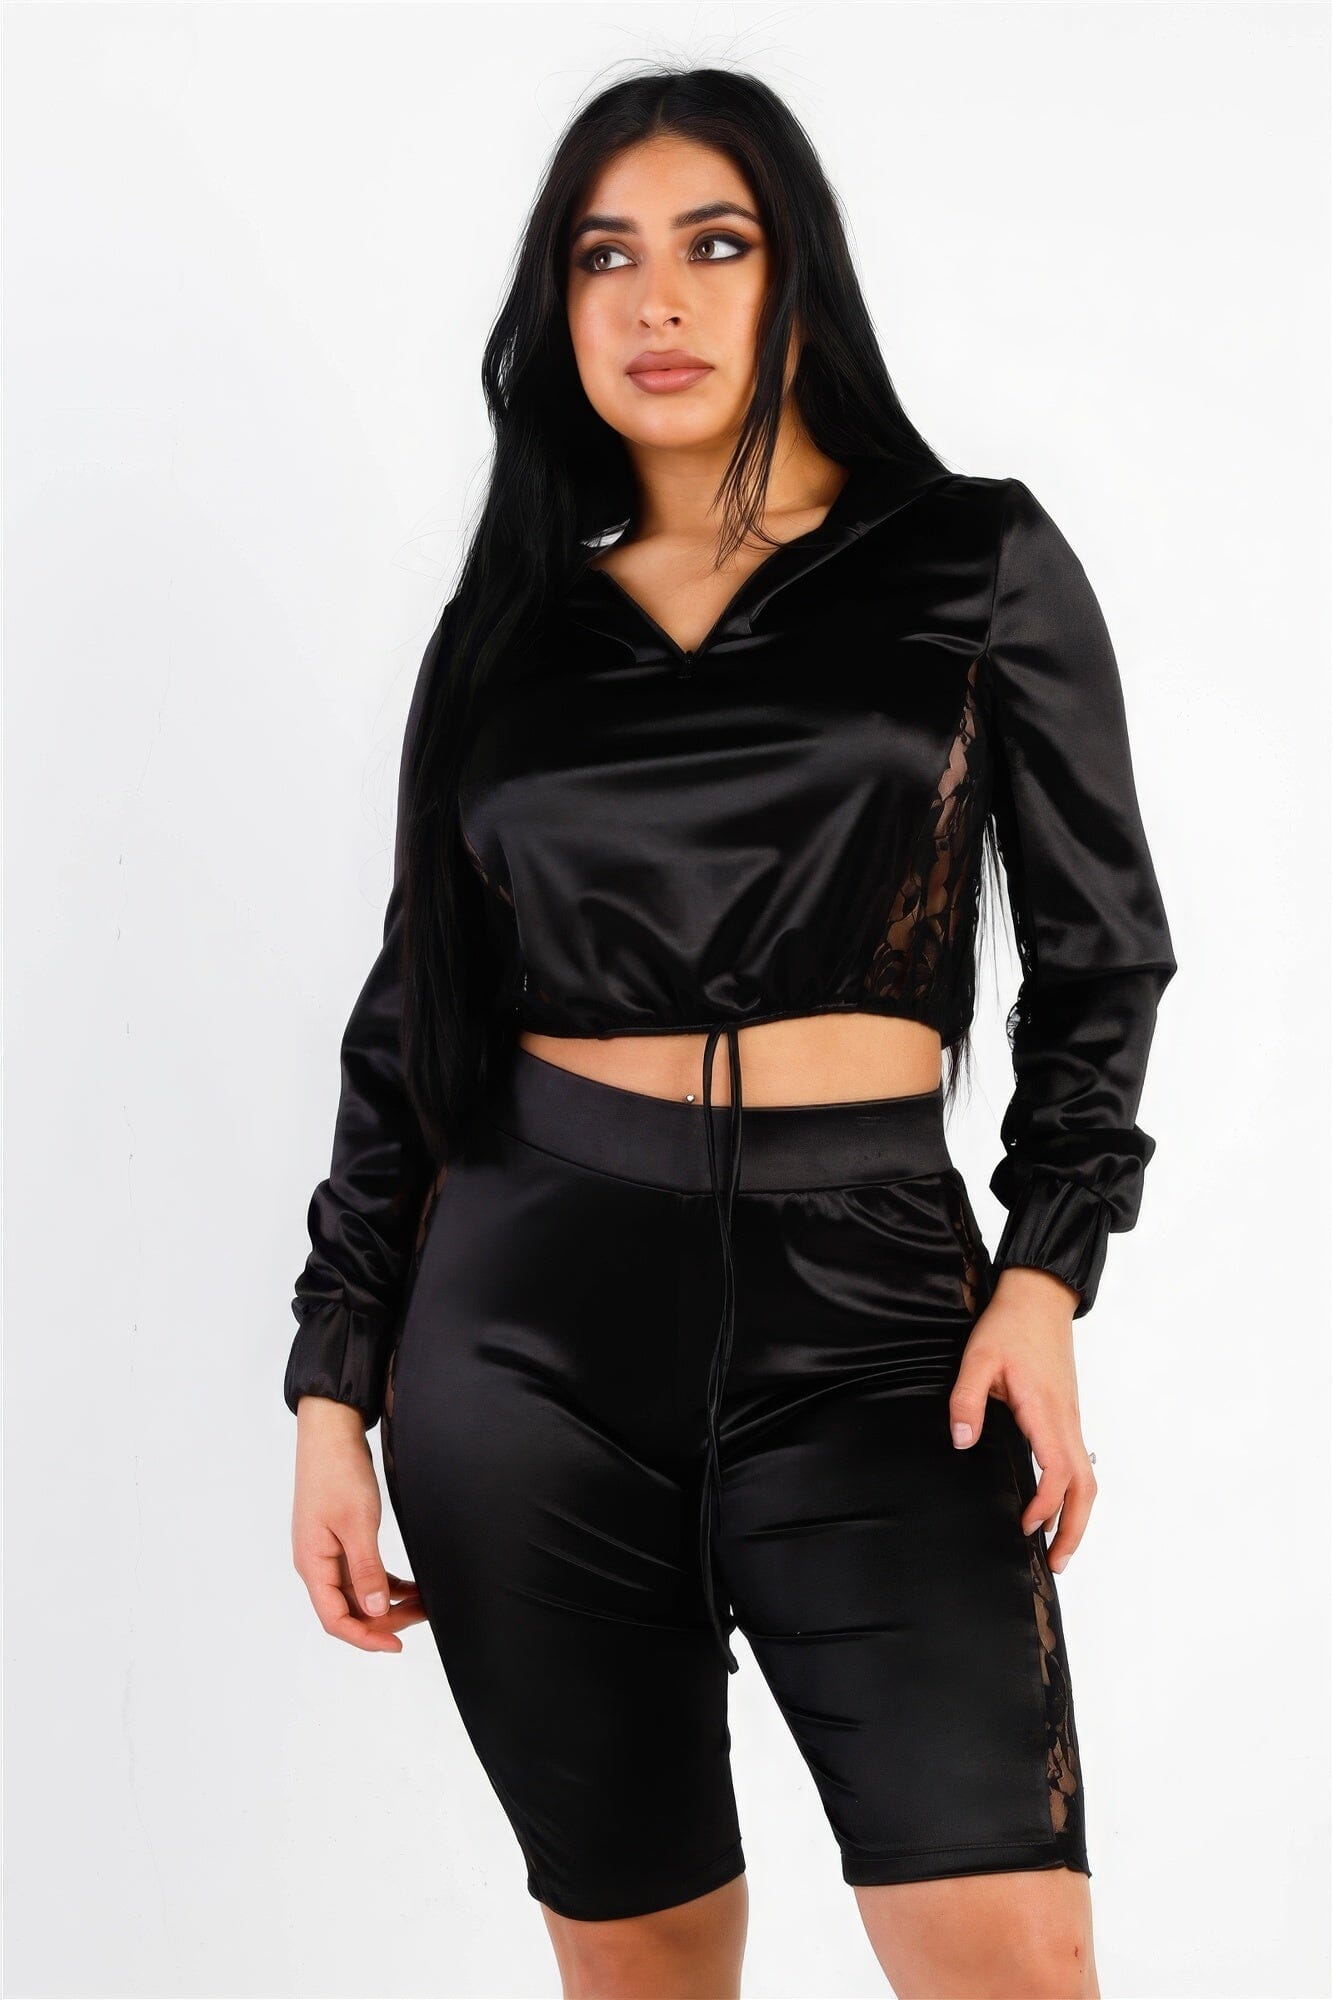 Black Satin Lace Details Long Sleeve Hooded Crop Top & Biker Short Set Outfit Sets jehouze 